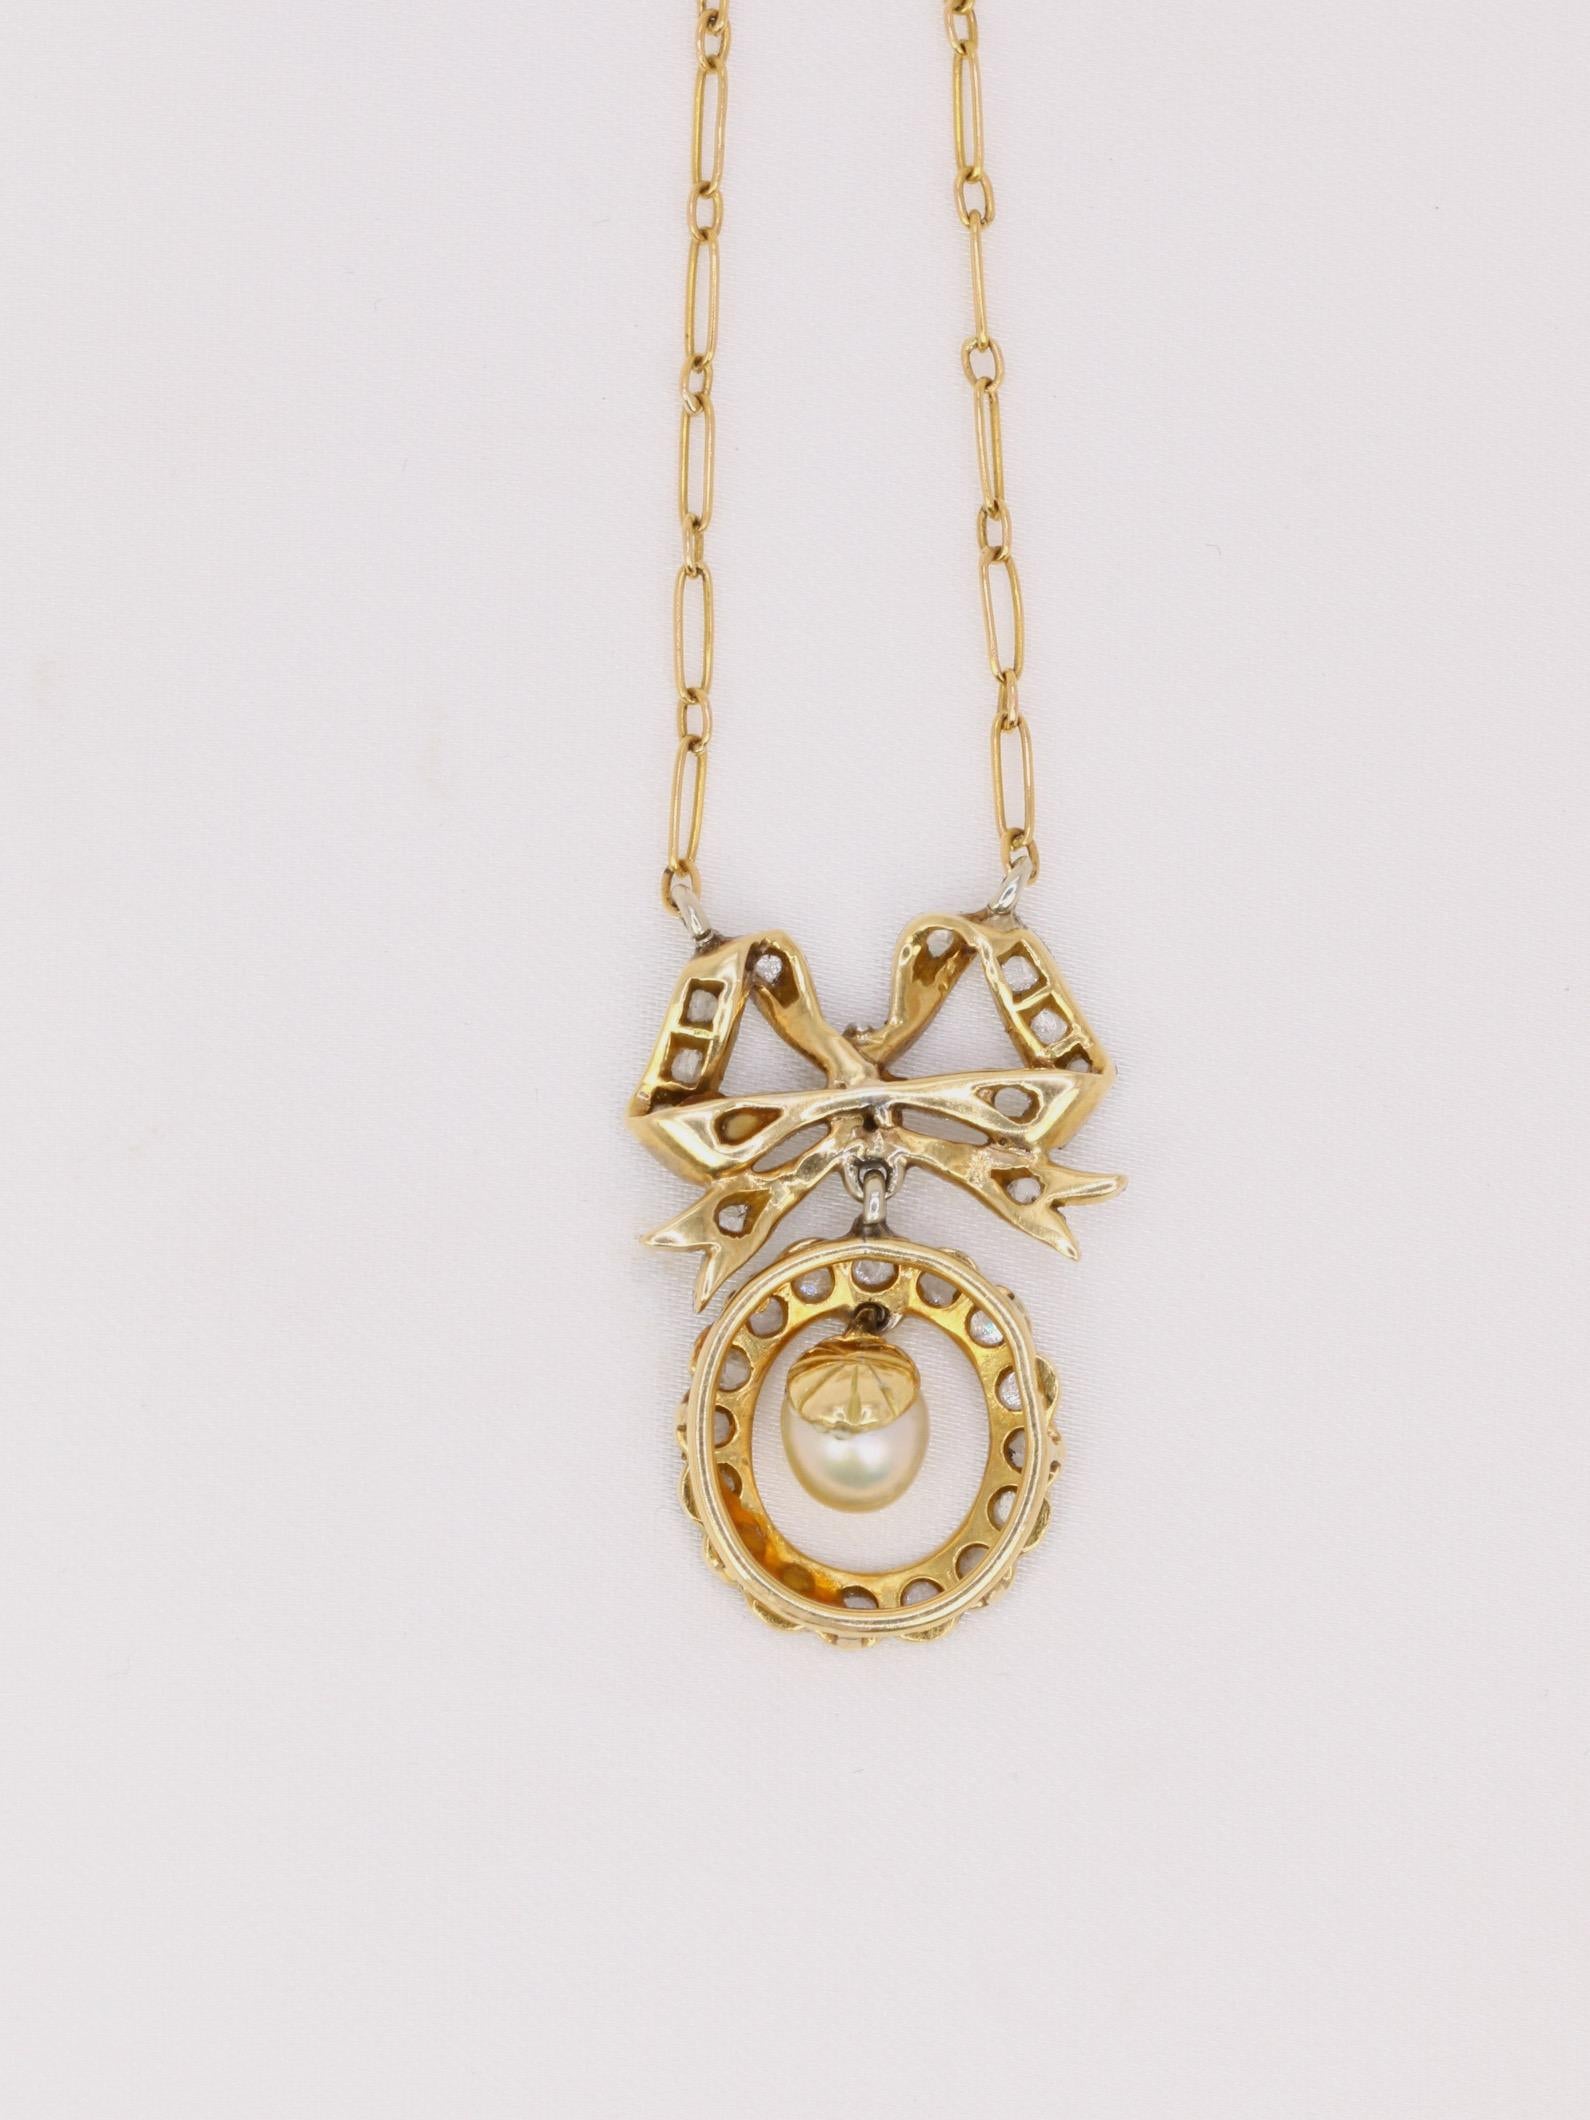 Collier en or 18k (750°/°°) composé d’un nœud Louis XVI surmontant un motif ovale diamanté soutenant une perle fine mobile. Les noeuds de style Louis XVI reviennent à la mode au moment de la période Belle Epoque et ce collier en est un joli exemple.